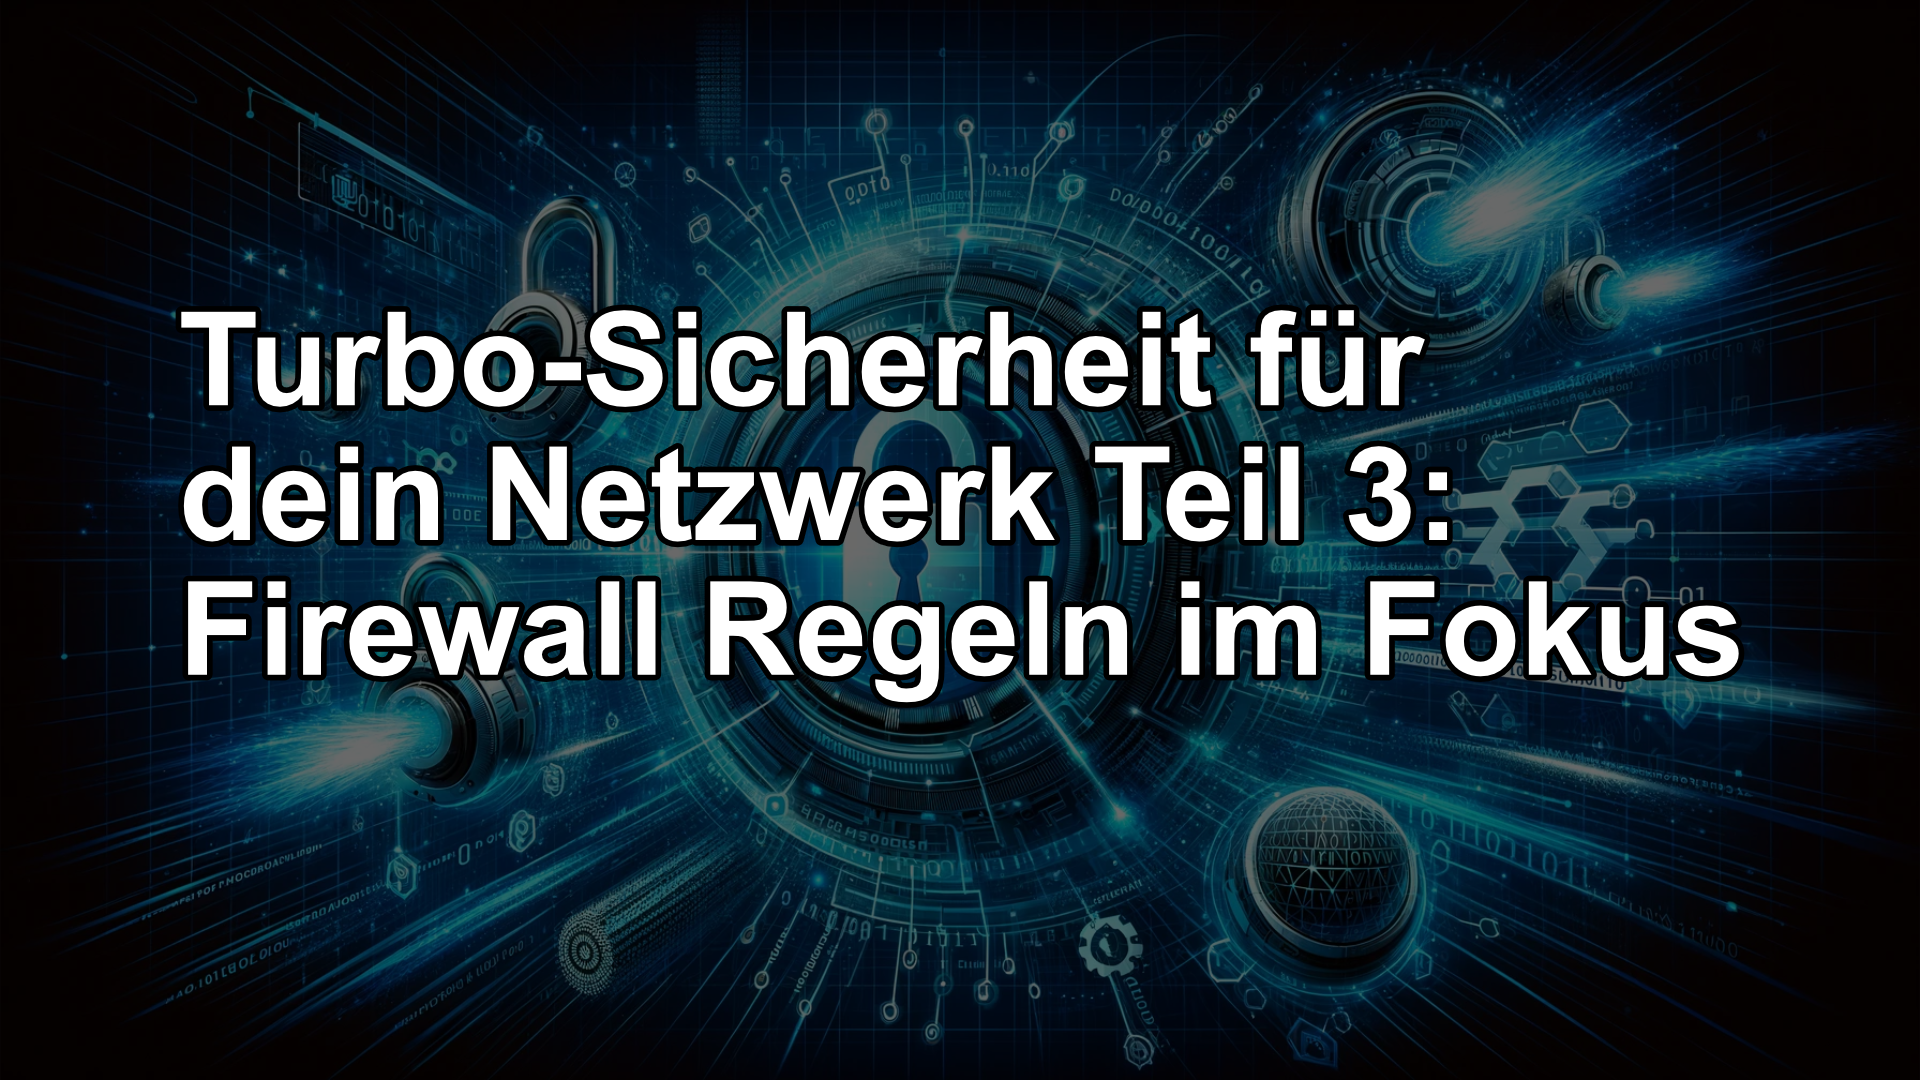 You are currently viewing Turbo-Sicherheit für dein Netzwerk Teil 3: Firewall Regeln im Fokus